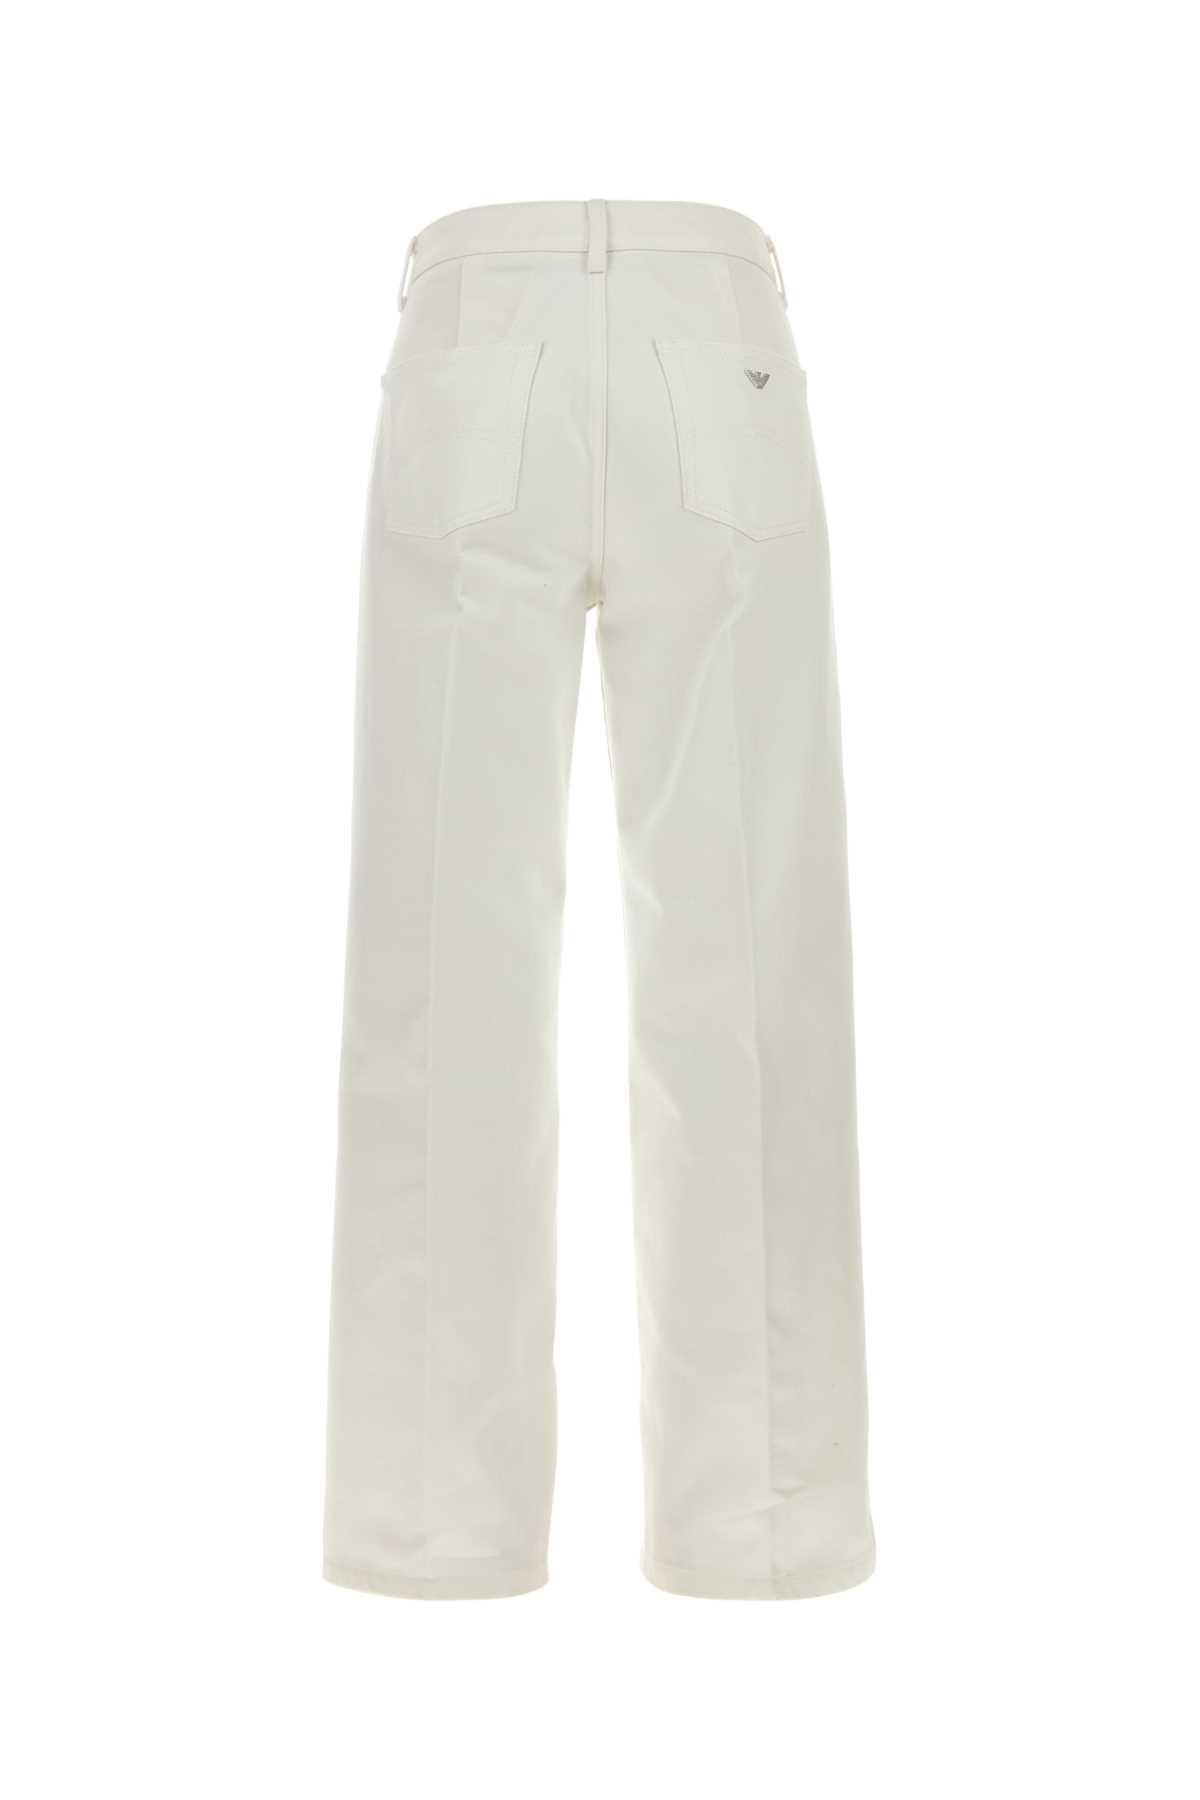 Emporio Armani White Denim J33 Jeans In Betulla